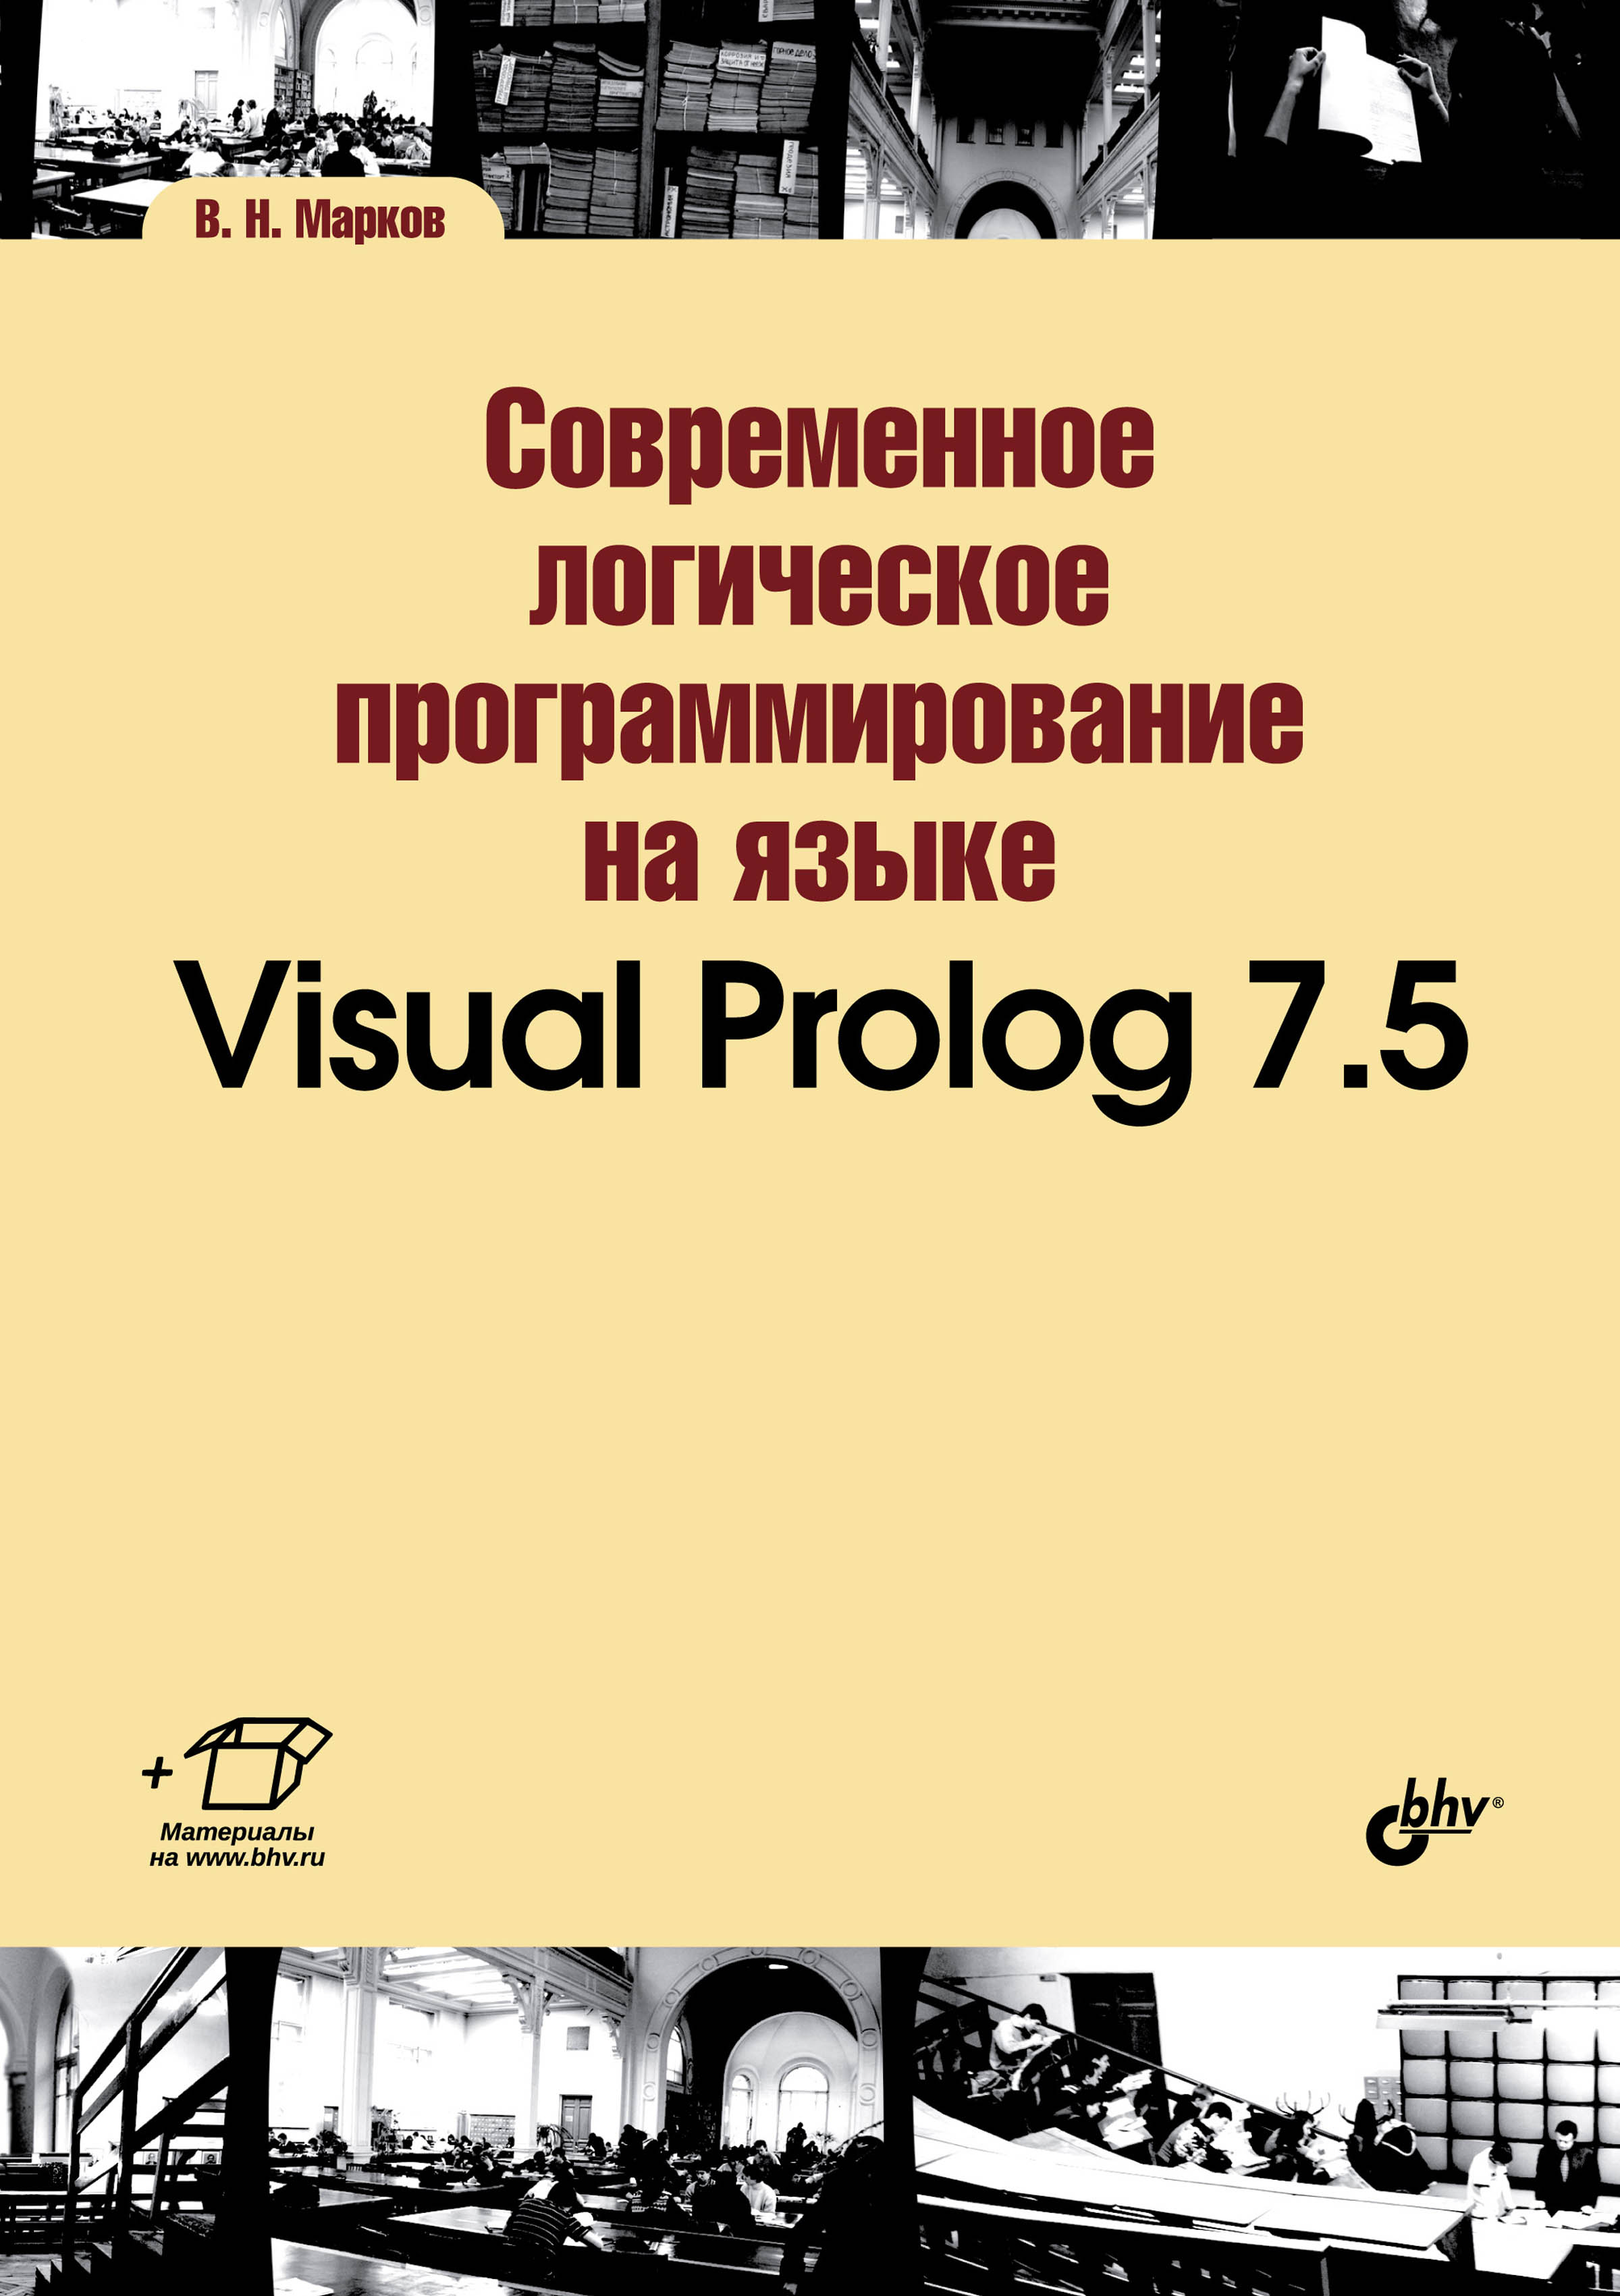 Книга Учебная литература для вузов (BHV) Современное логическое программирование на языке Visual Prolog 7.5 созданная В. Н. Марков может относится к жанру программирование, учебники и пособия для вузов. Стоимость электронной книги Современное логическое программирование на языке Visual Prolog 7.5 с идентификатором 23878021 составляет 504.00 руб.